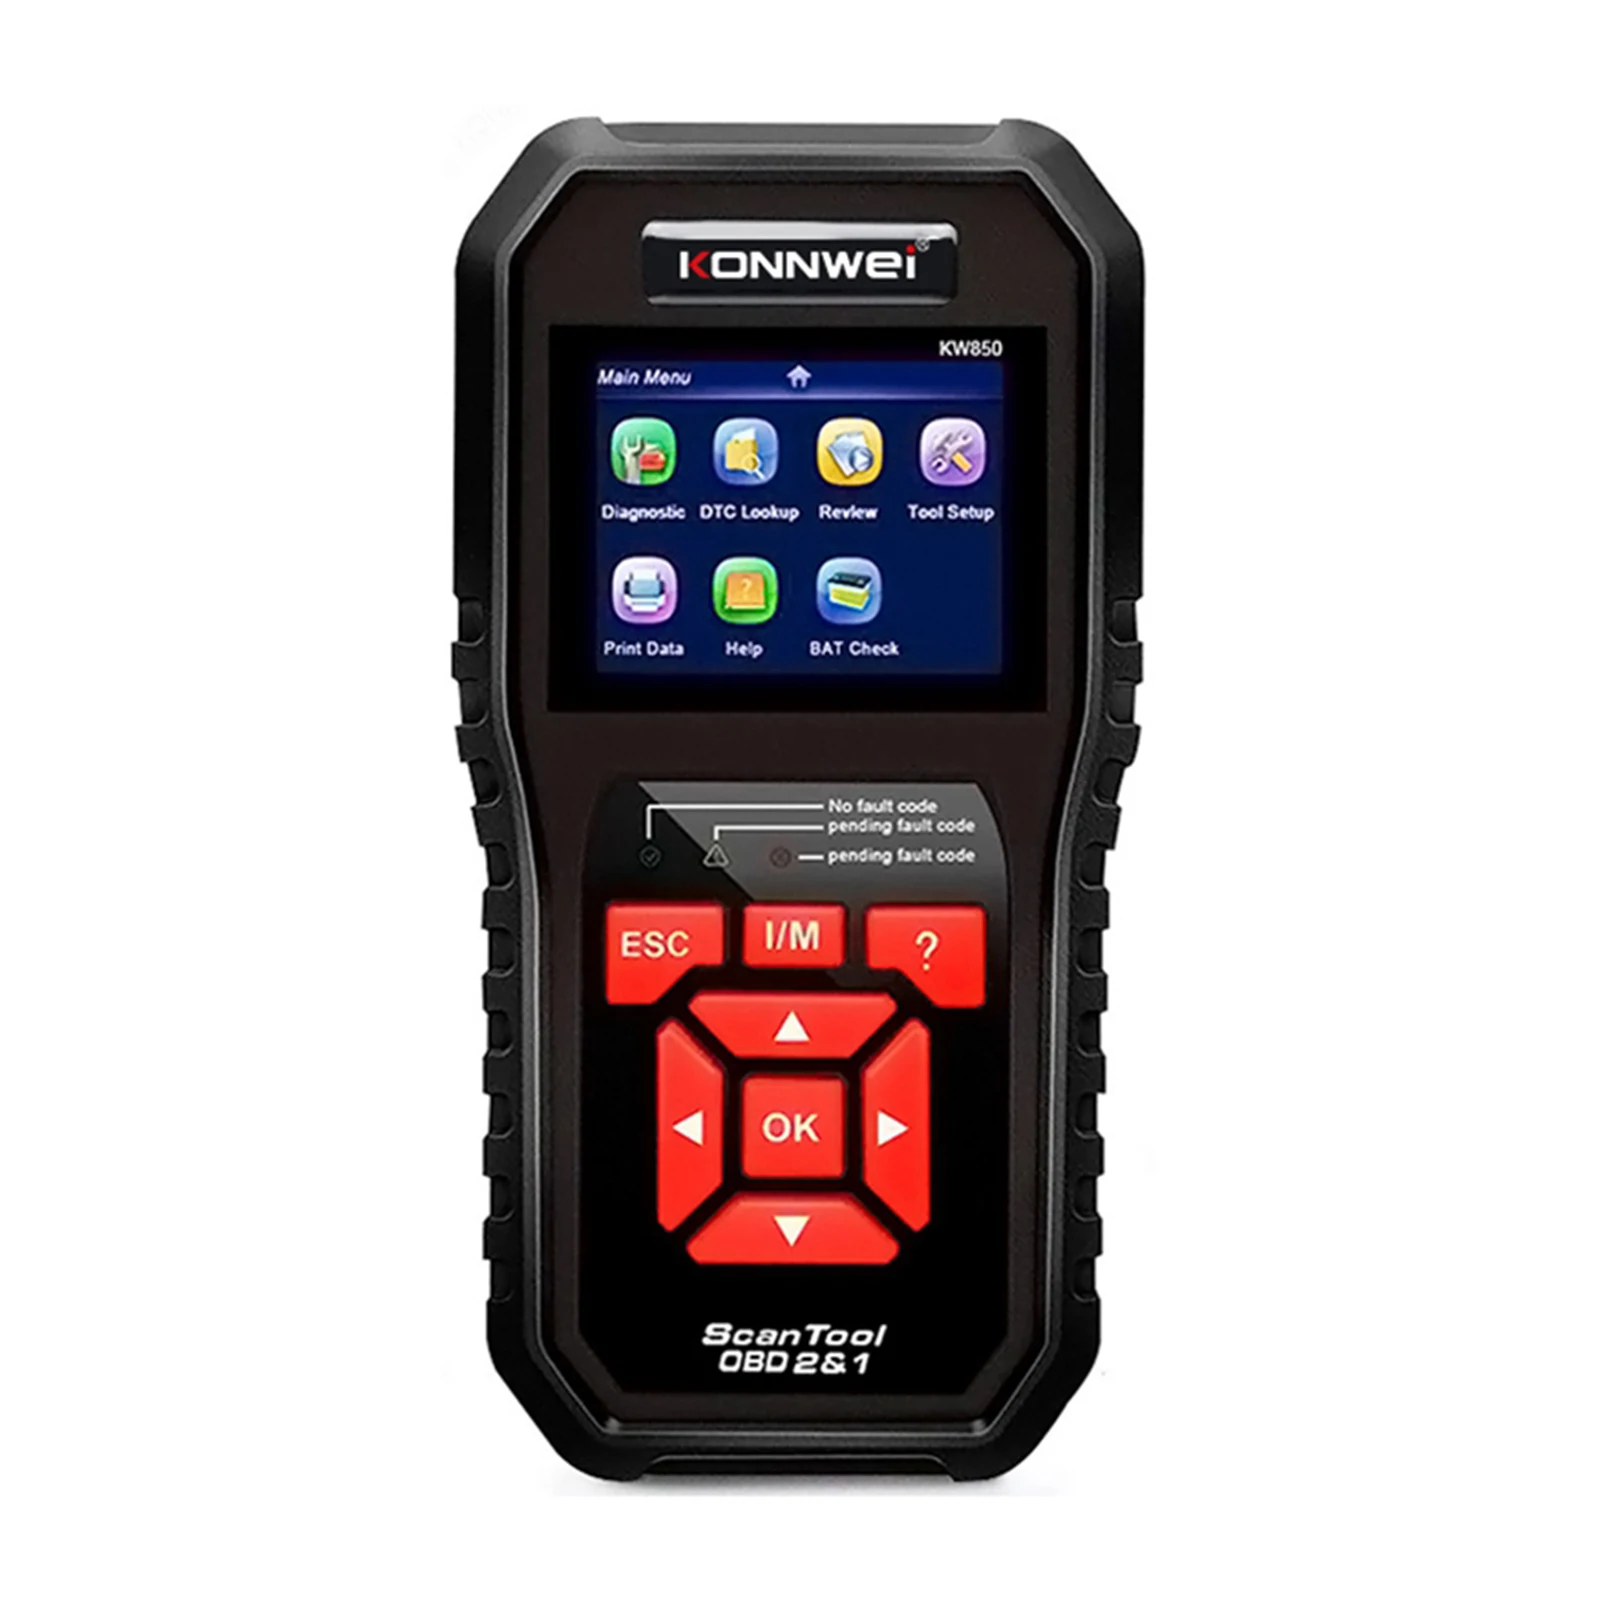 KW850 OBD2 Car Diagnostic Scanner Tool Car Scanner Black Professional Smart